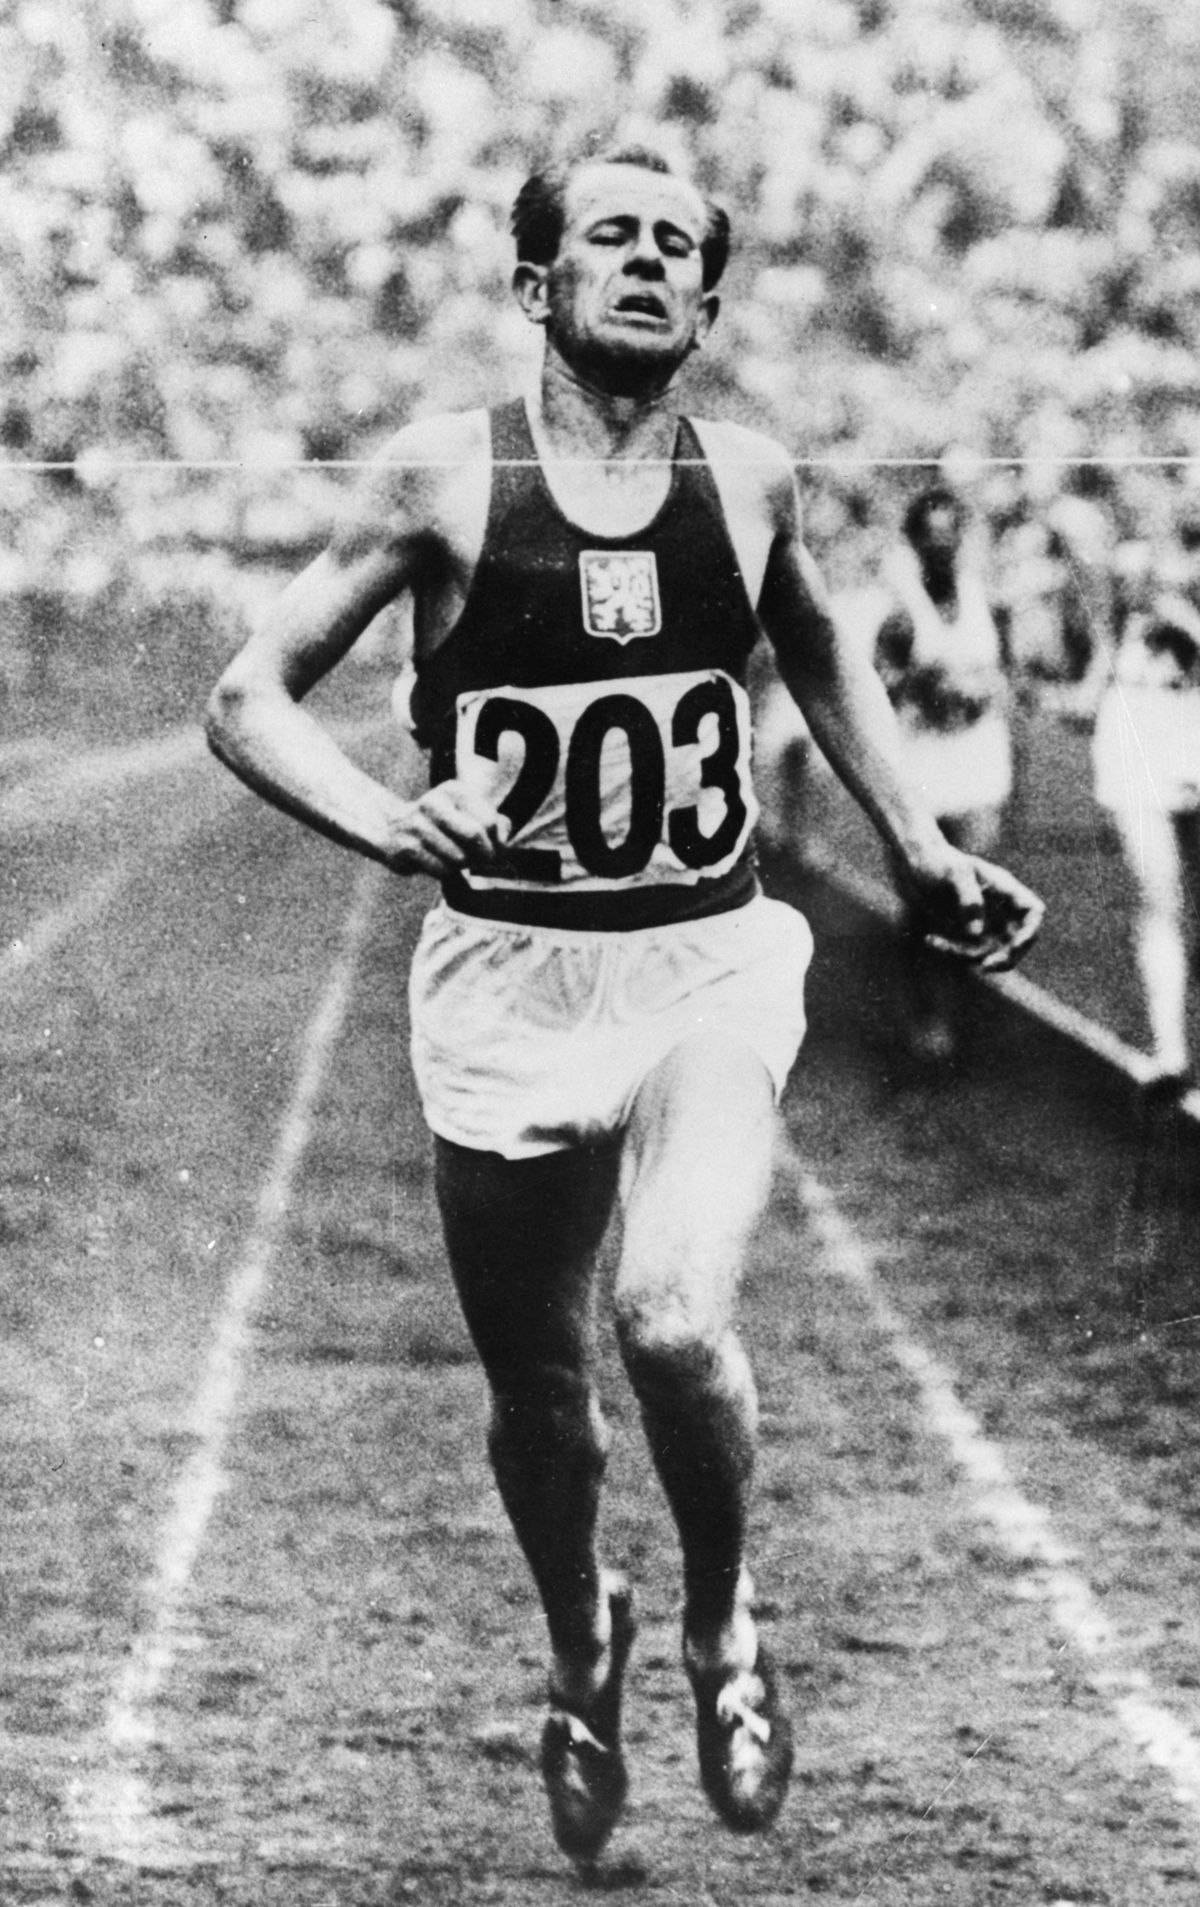 In 2000 the runner Emil Zátopek died